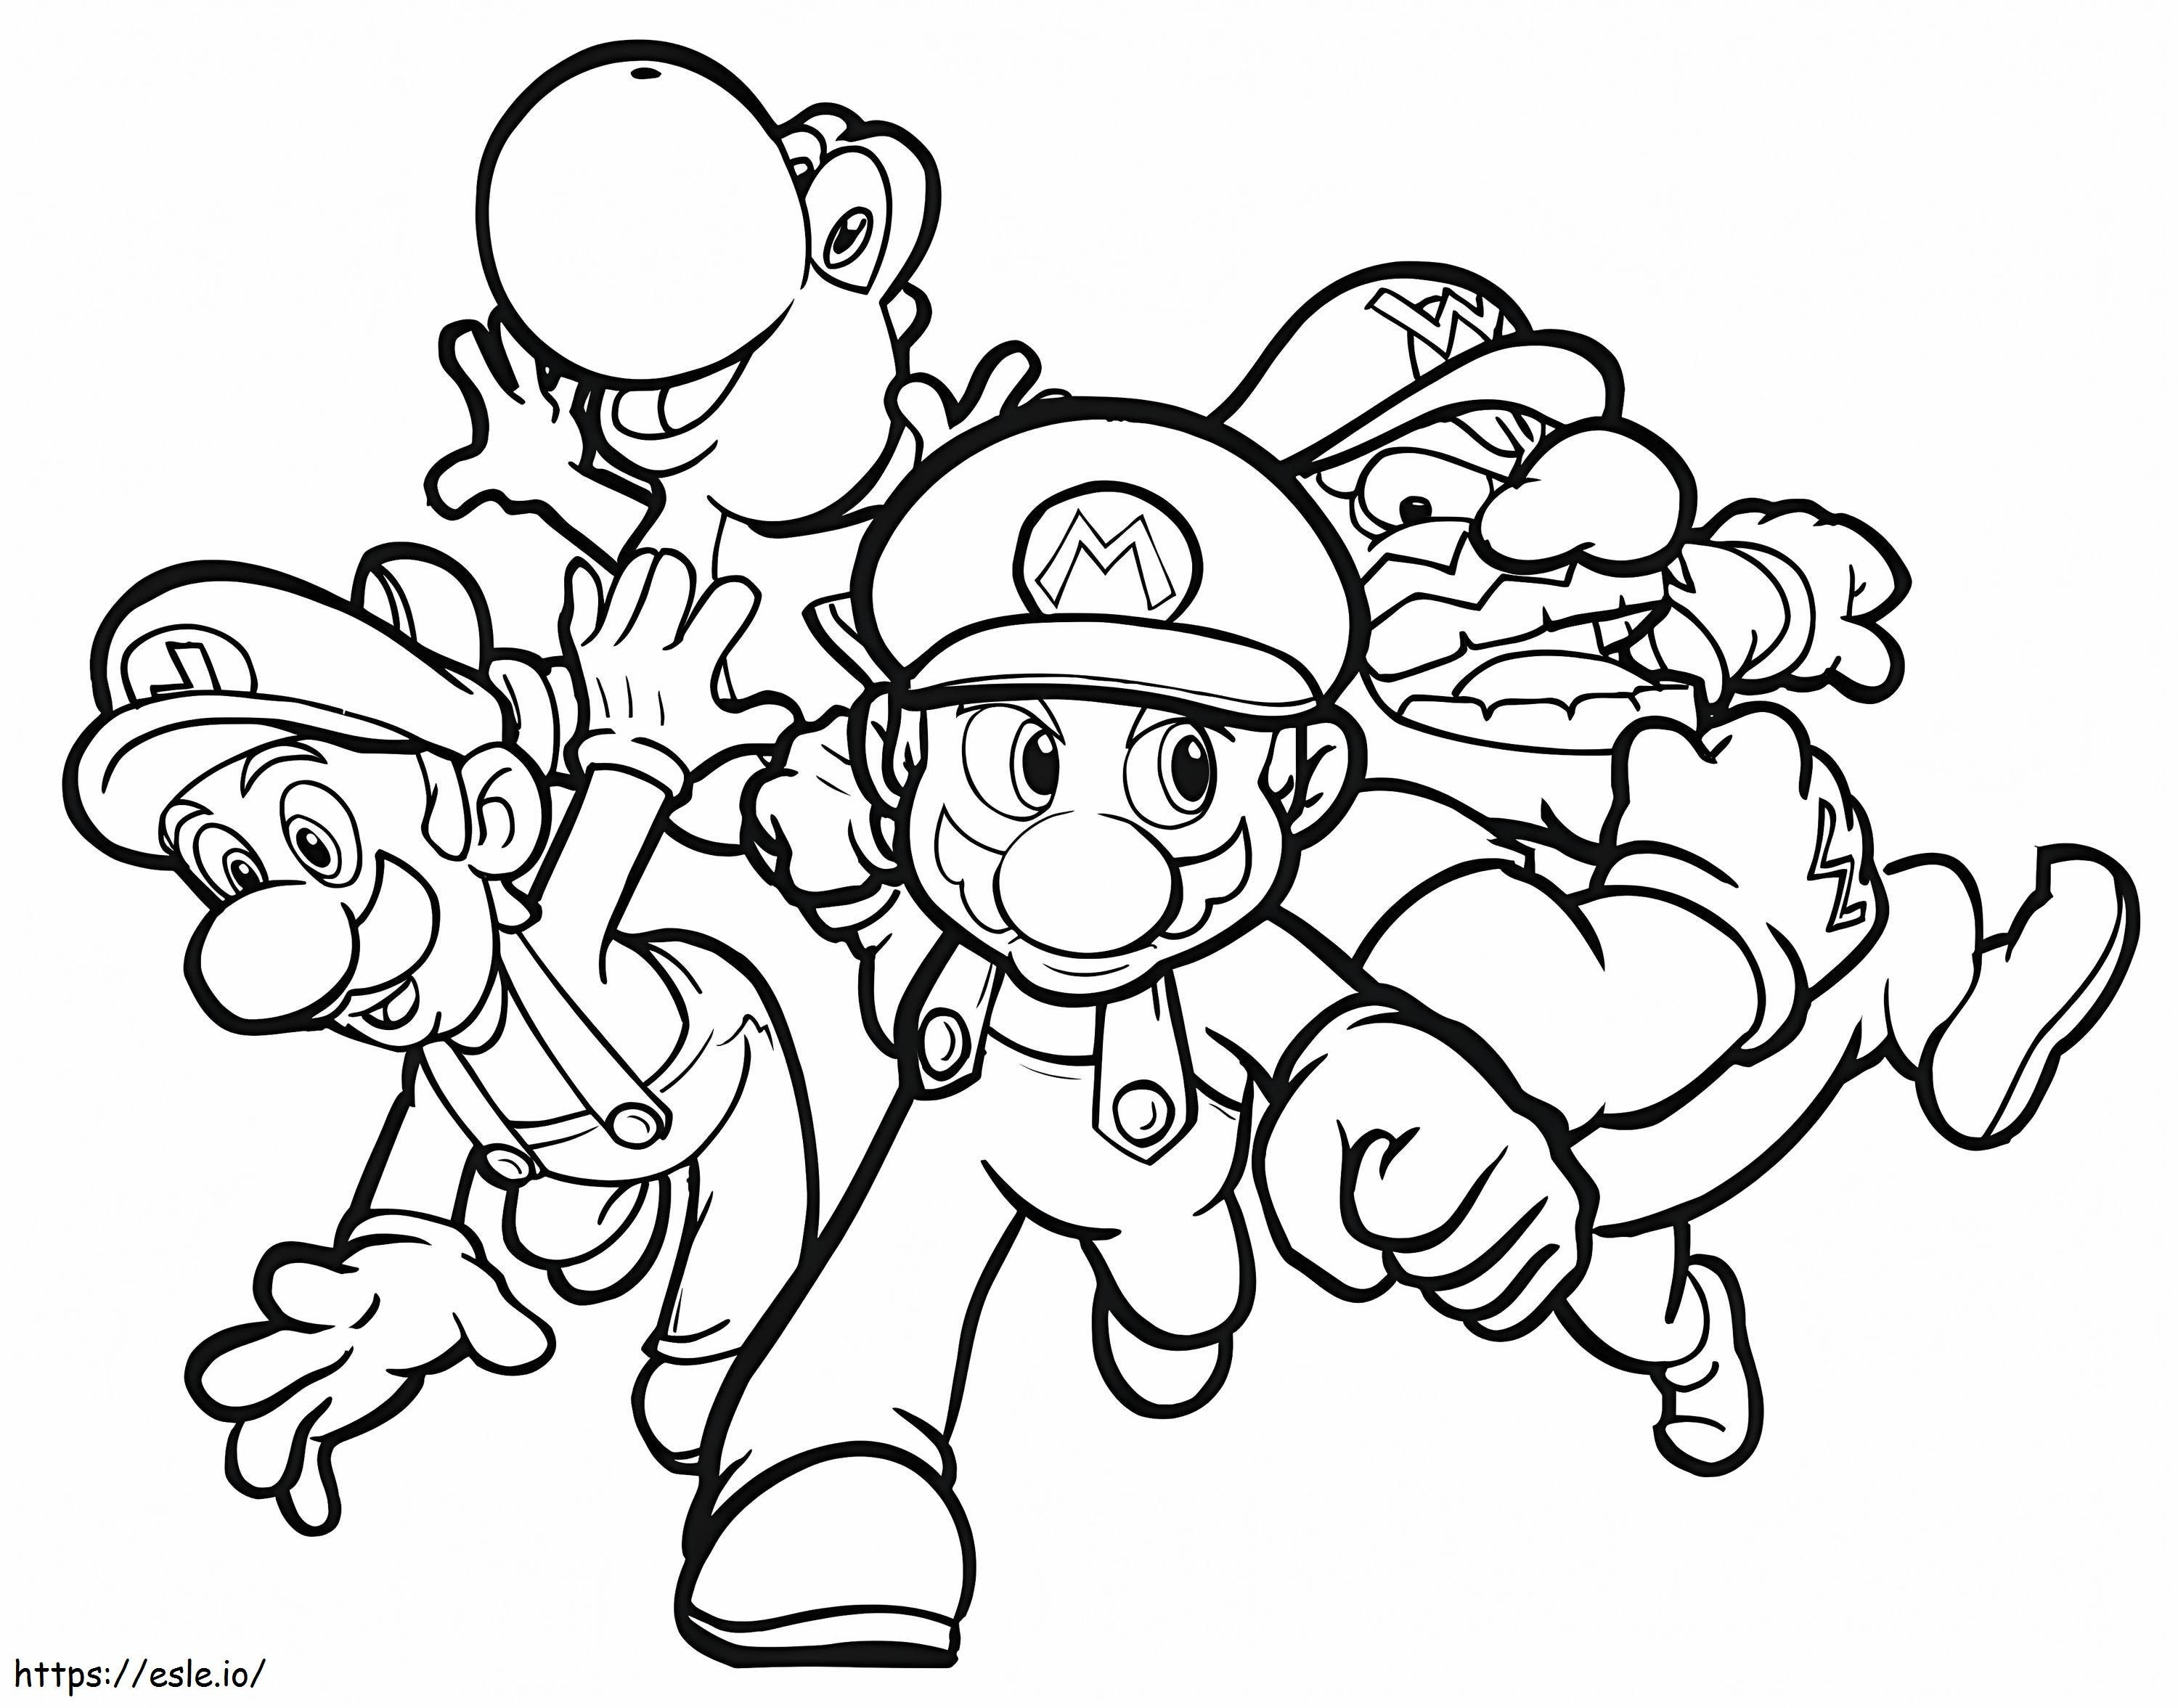 Personaggi di Mario 1 da colorare